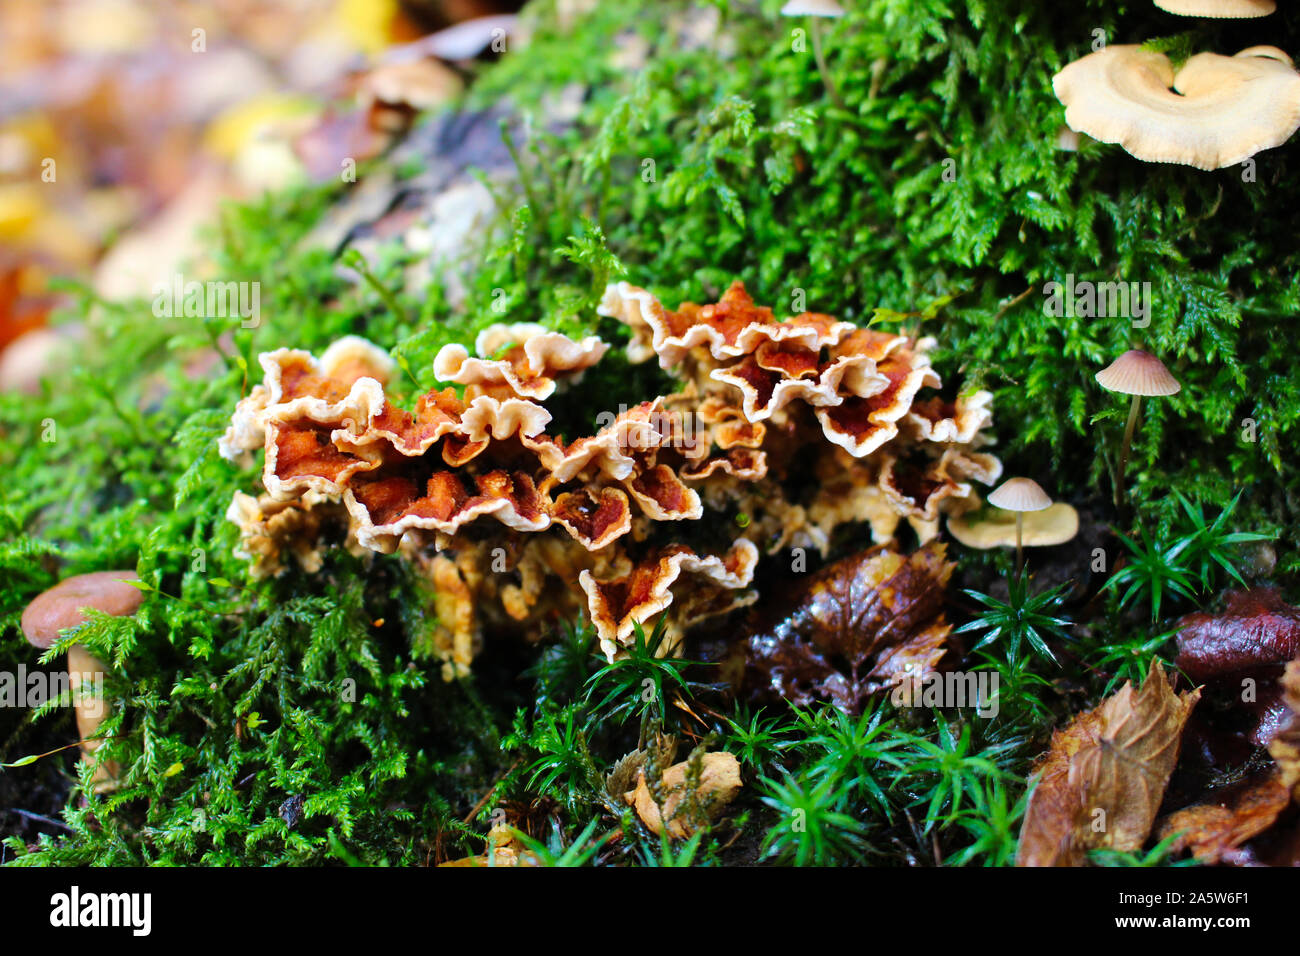 Fokus auf Eiche ausgewählt - Laminierte Pilz (Stereum gausapatum) Stockfoto